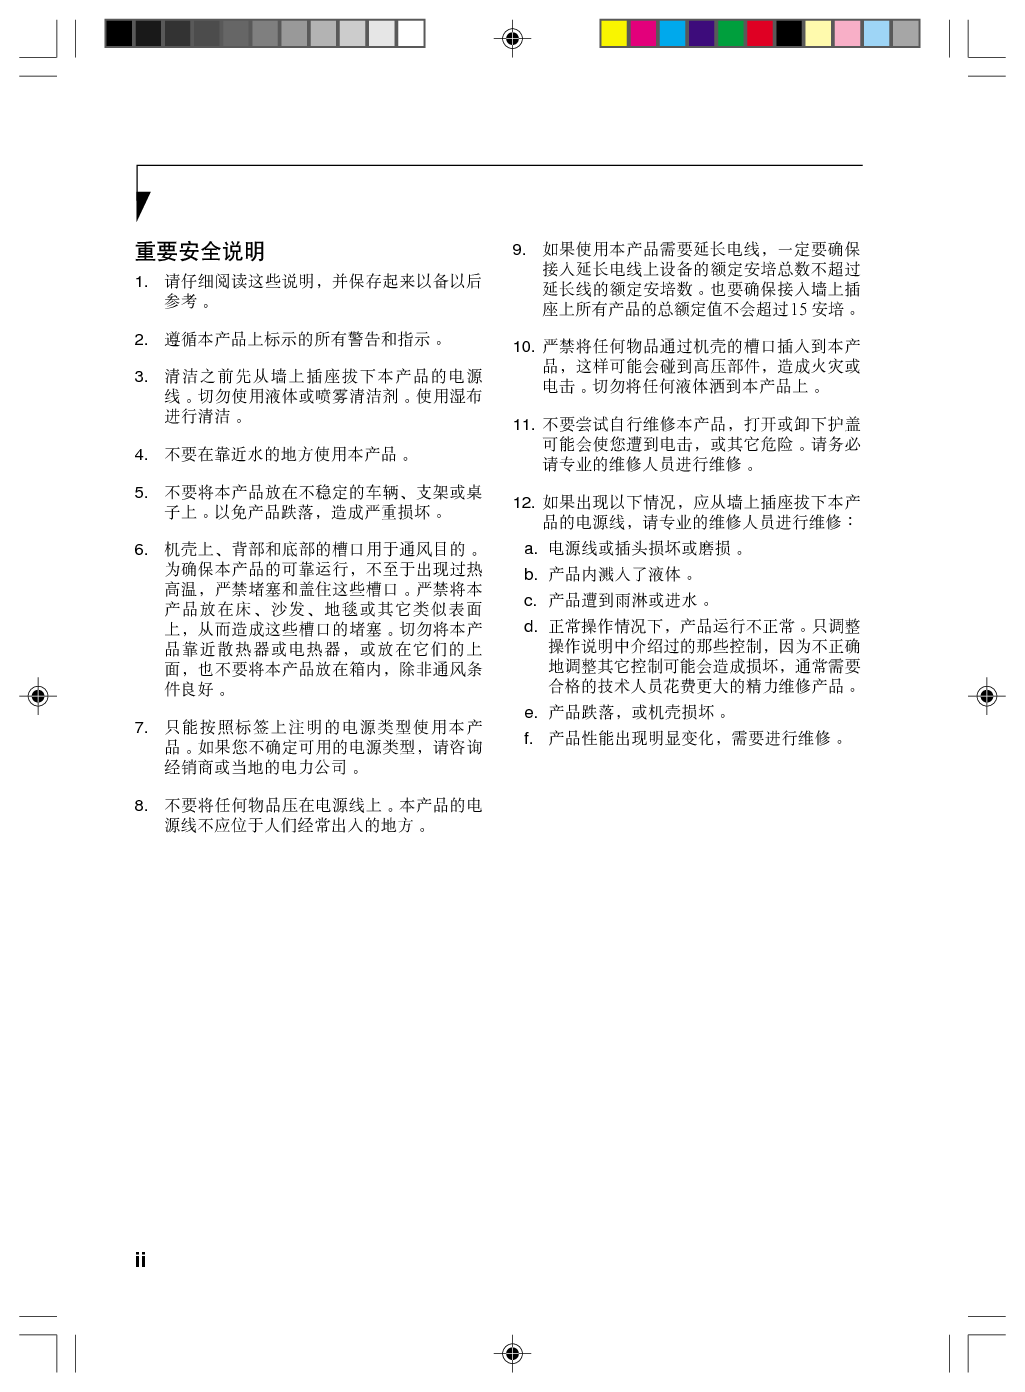 富士通 Fujitsu Lifebook P1610 使用说明书 第1页